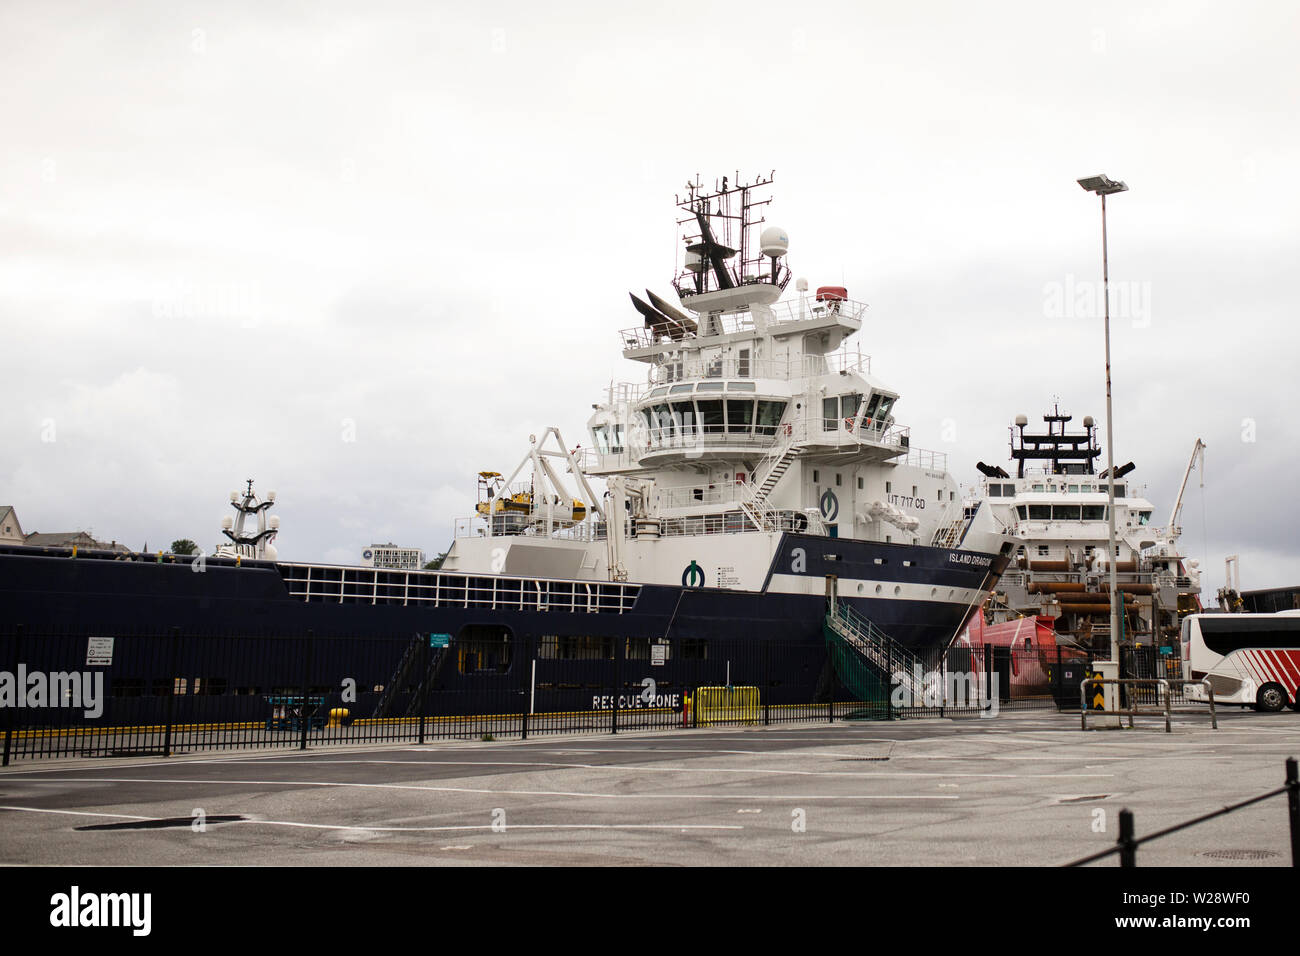 Die Insel Avantgarde, eine offshore Tug und Schiff zur Versorgung der norwegischen Ursprungs, im Hafen in Bergen, Norwegen angedockt. Stockfoto